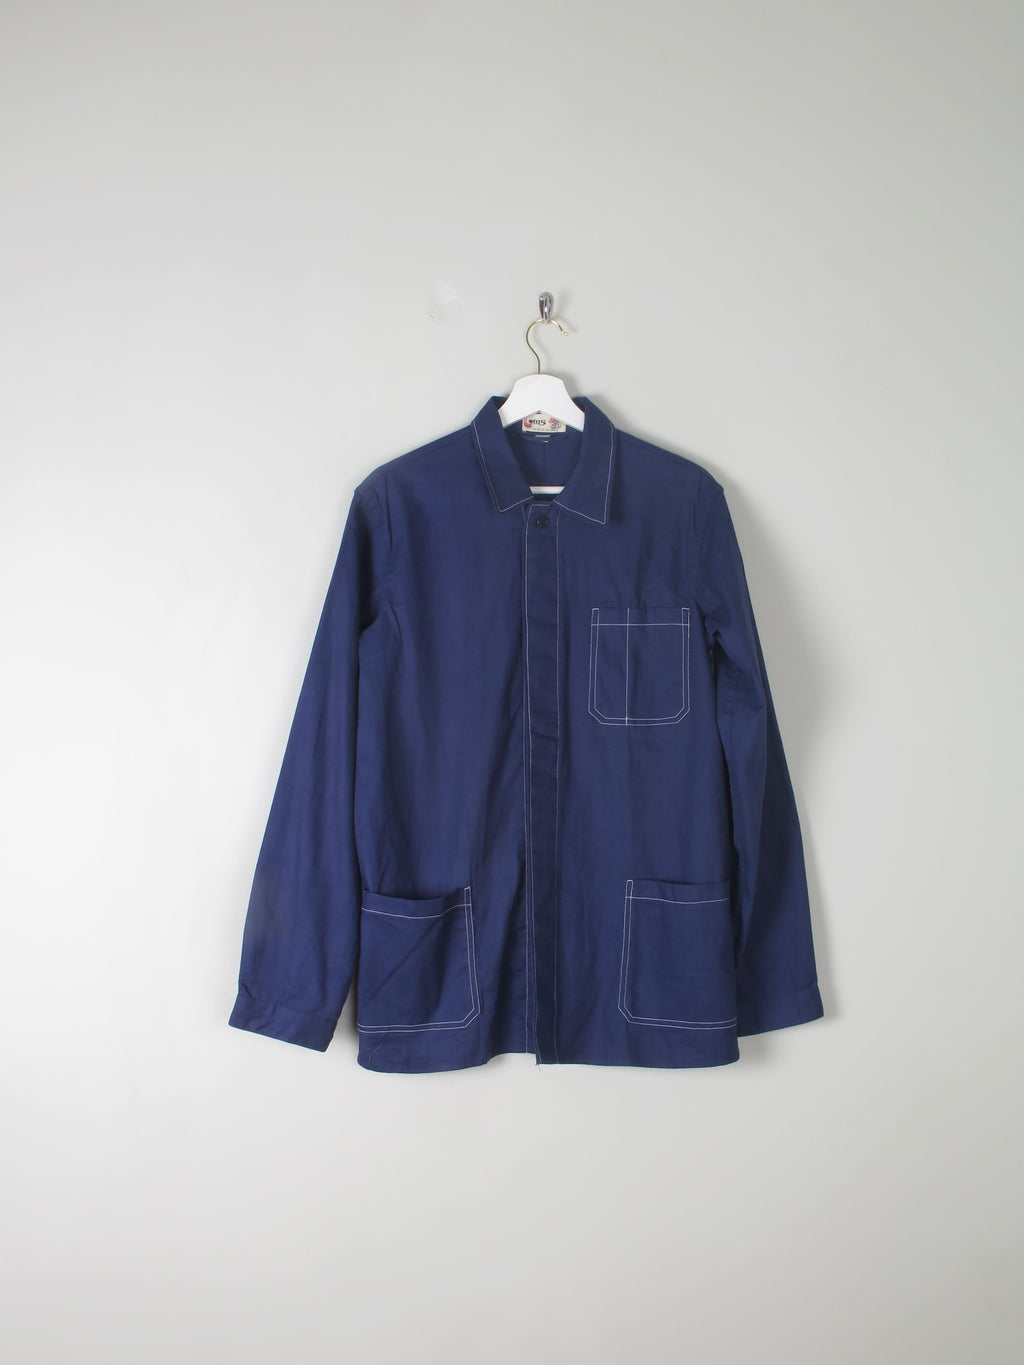 Men's Indigo Blue Work Jacket S/M